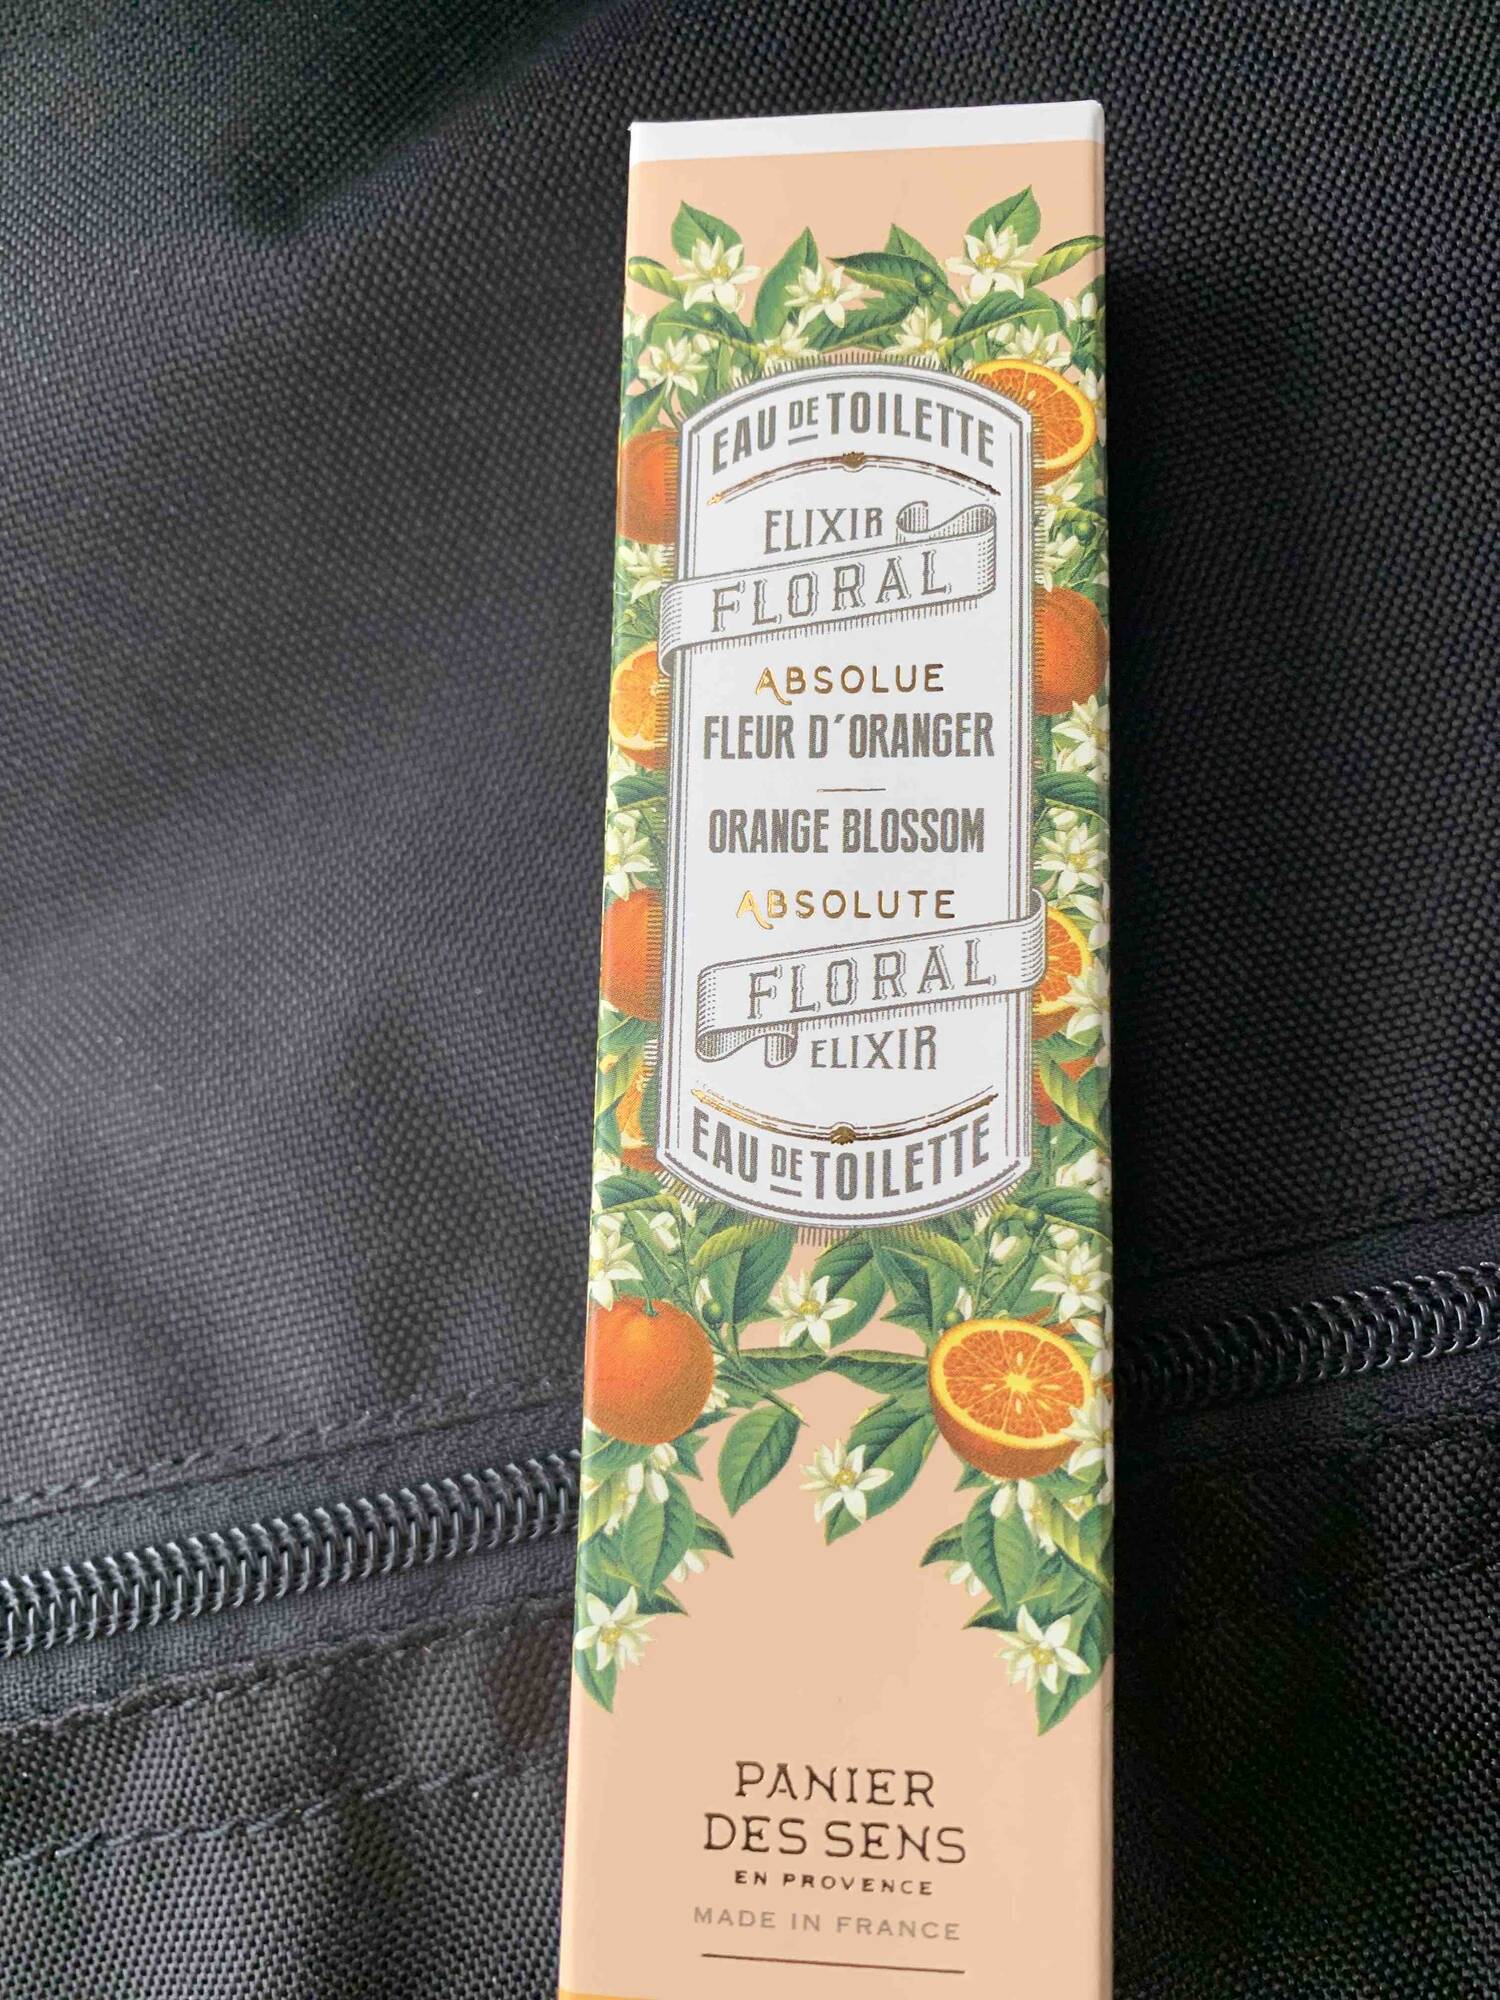 PANIER DES SENS - Elixir floral Fleur d'oranger - Eau de toilette